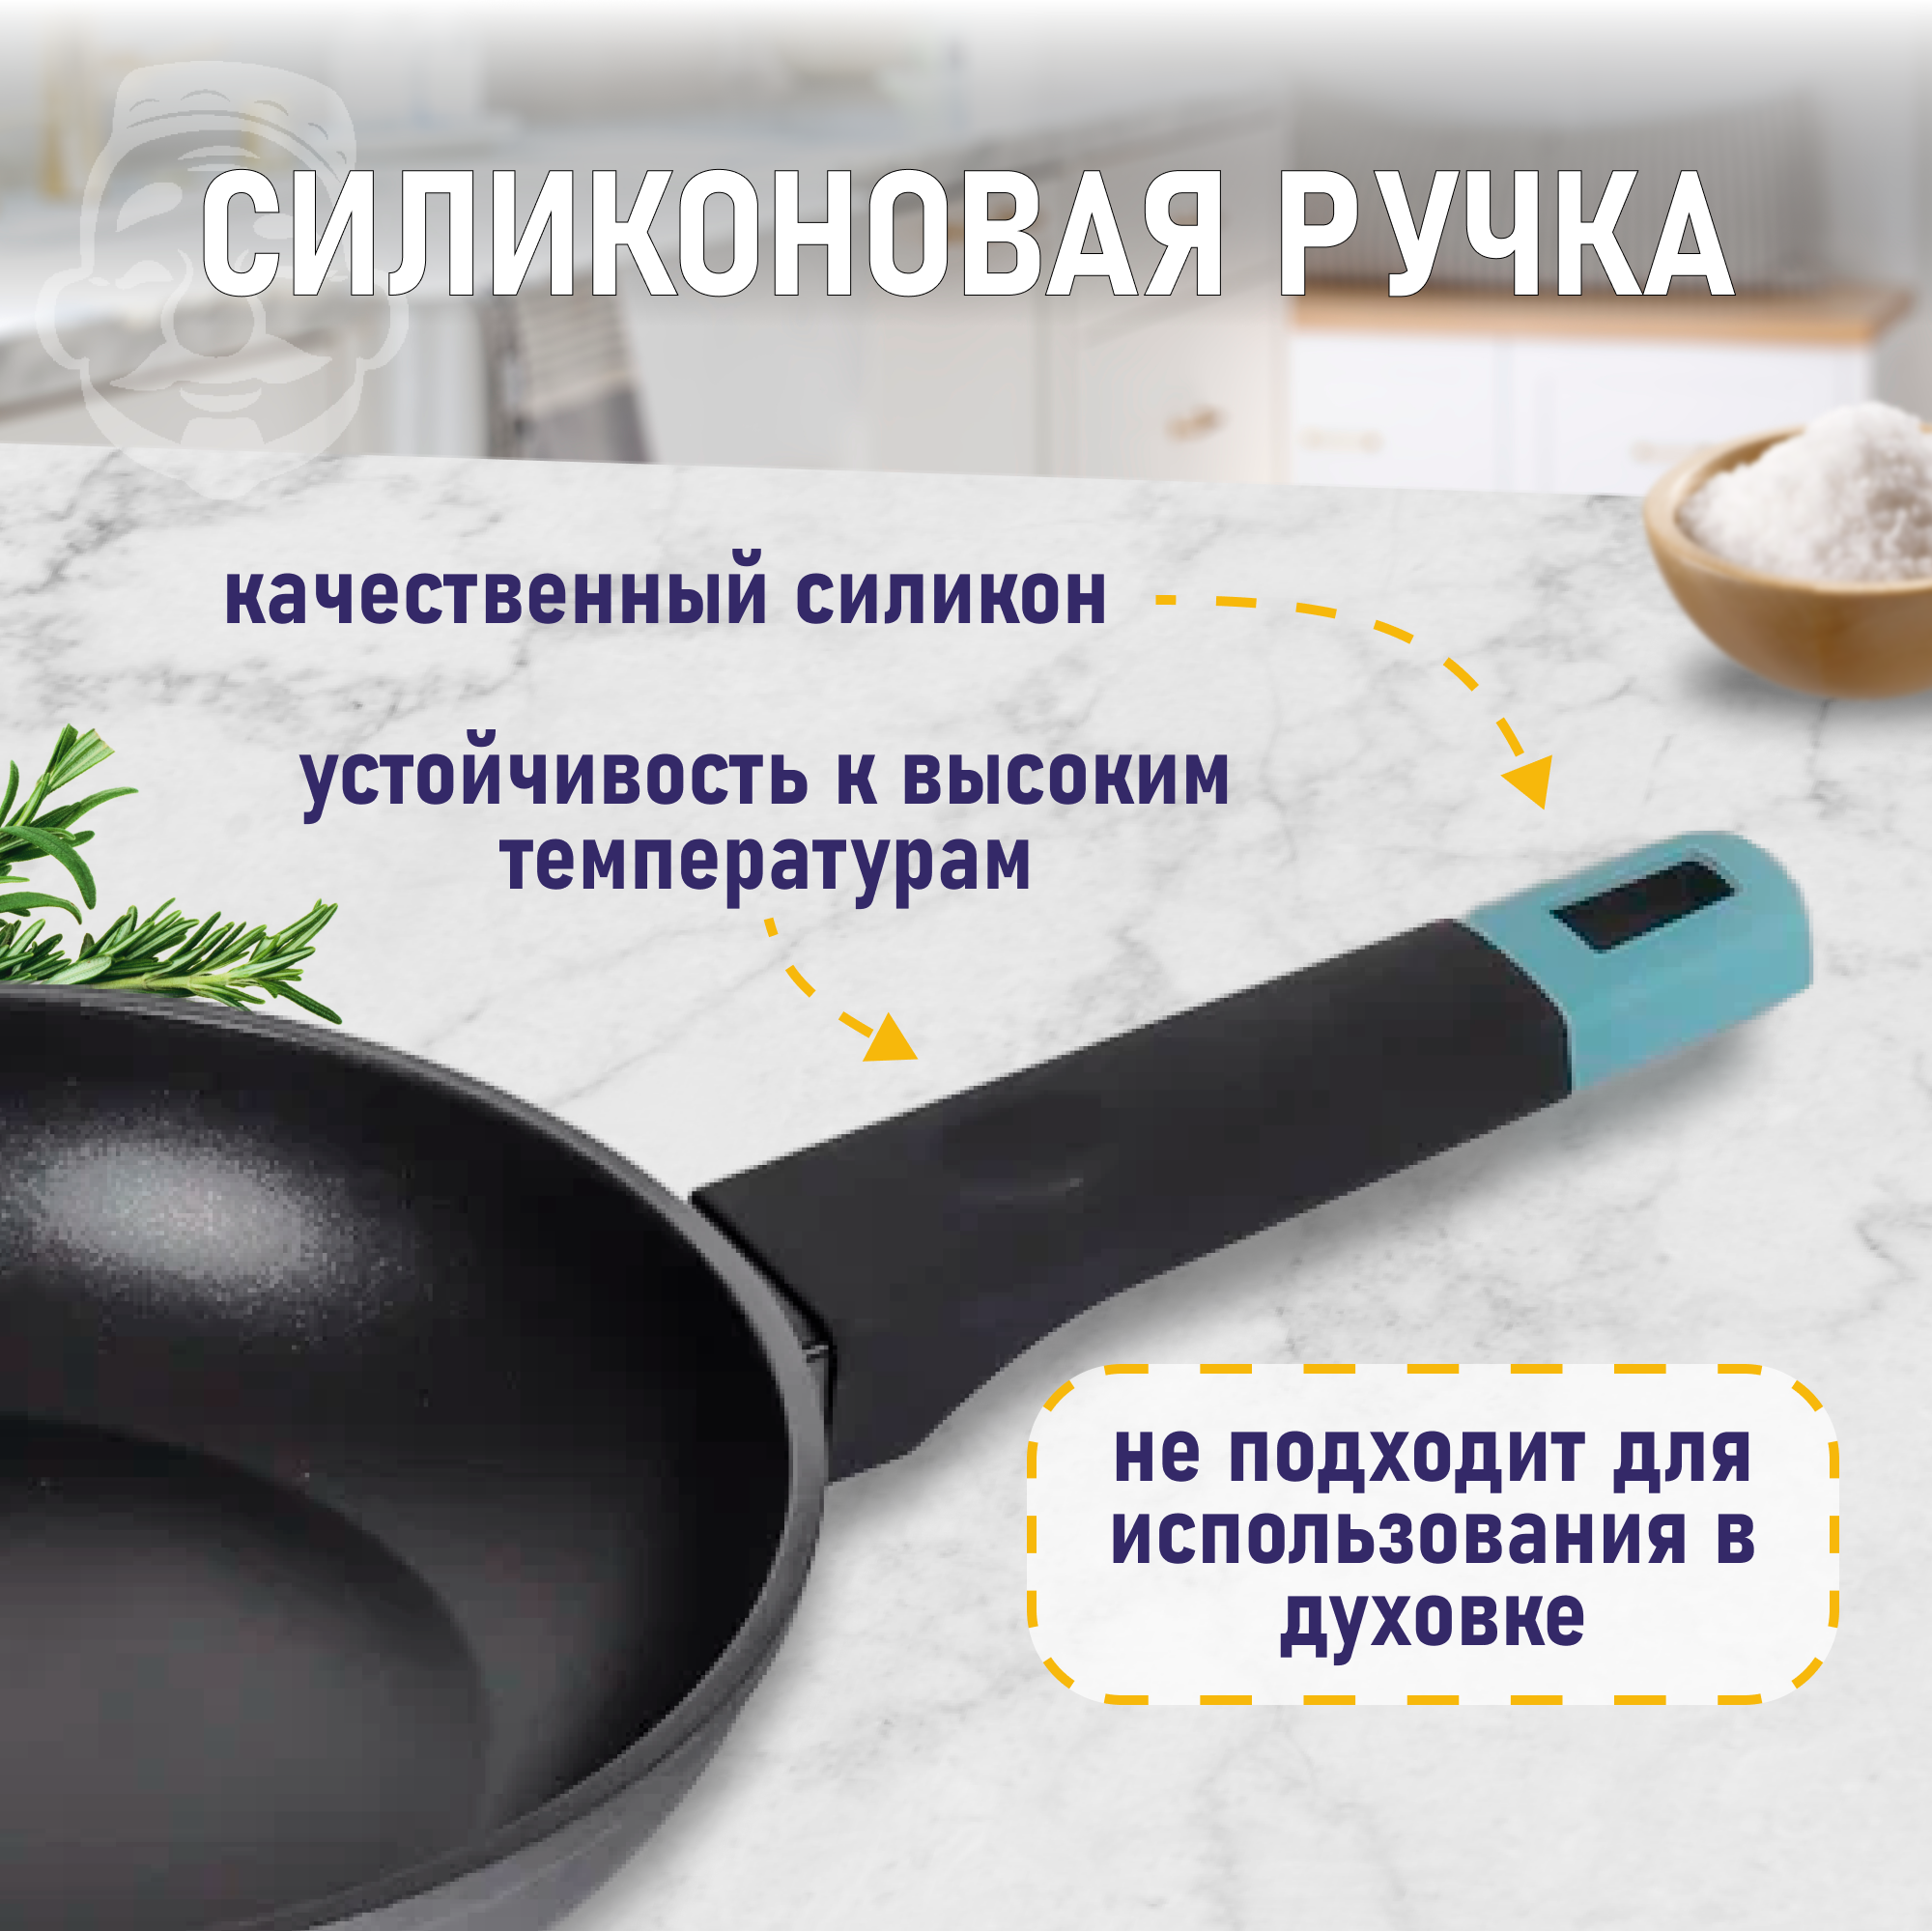 Сковородка / Сковорода для индукционных плит PLOVER, 28 см